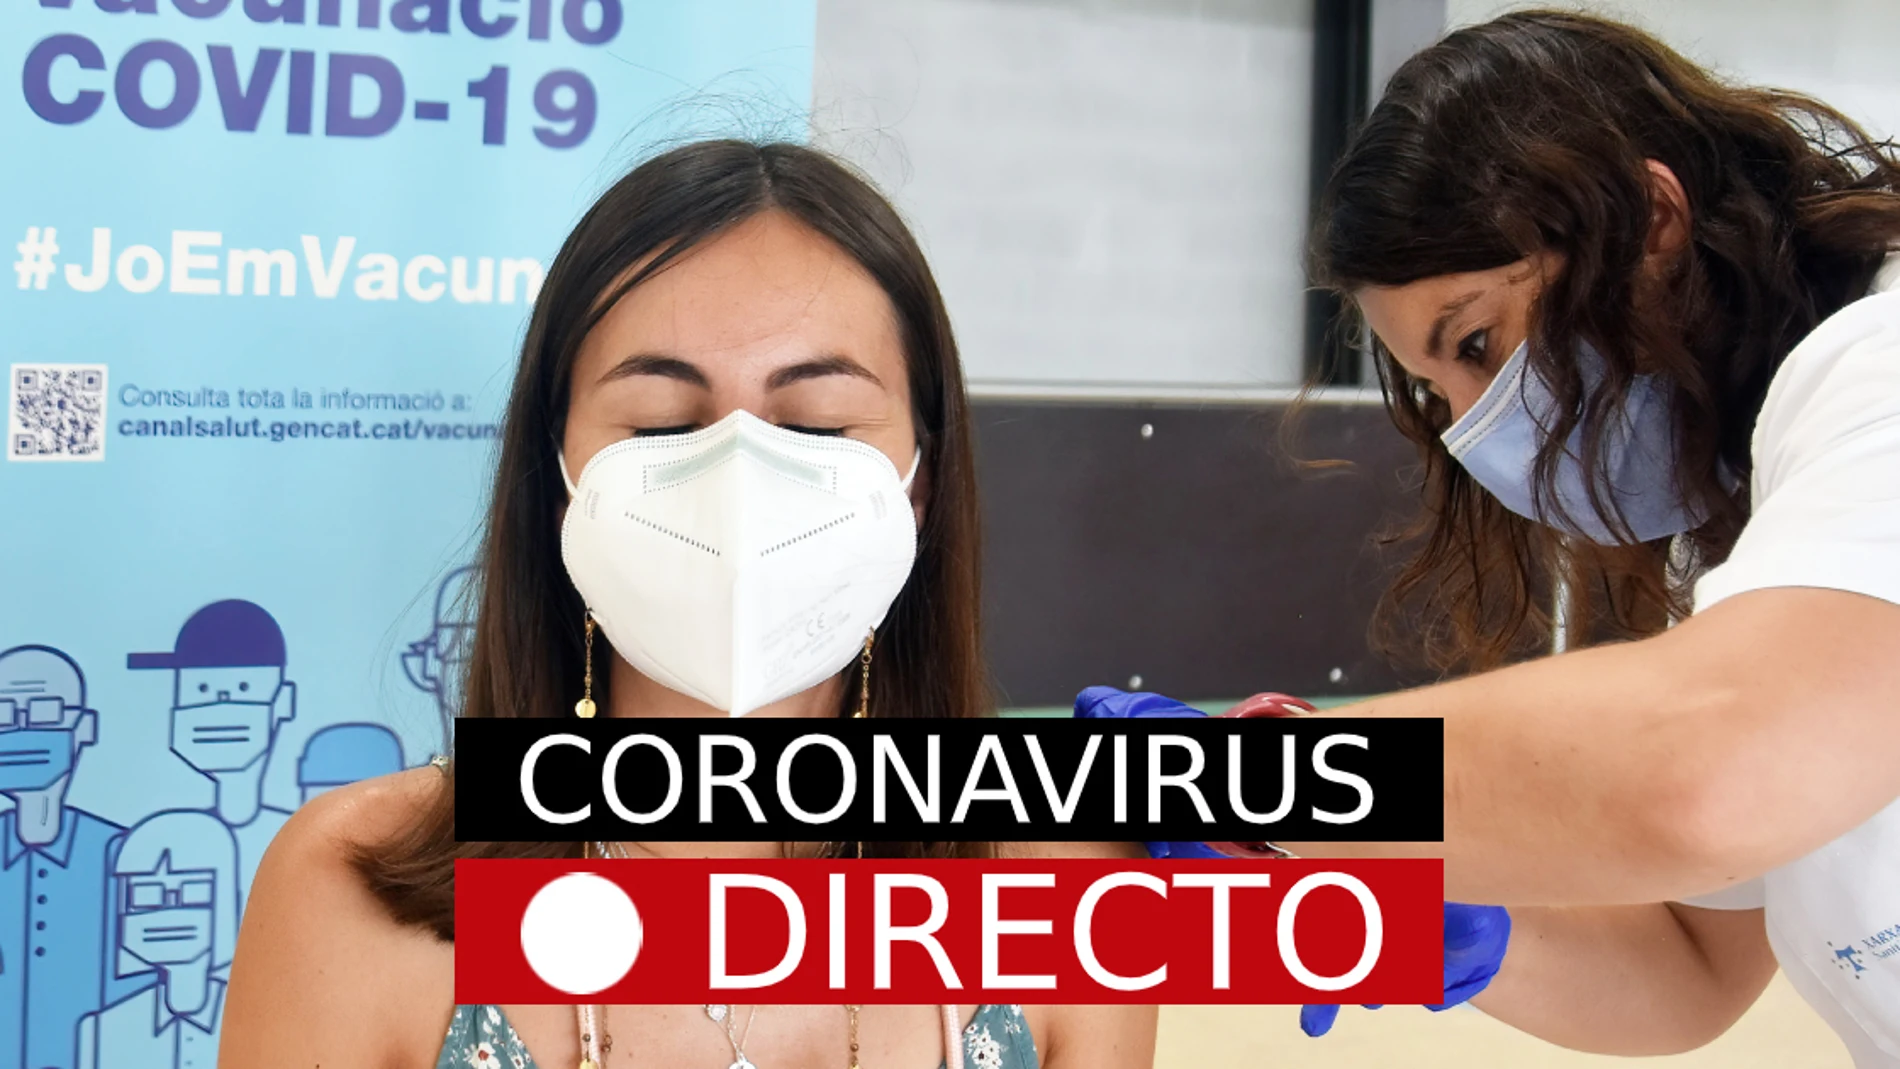 Última hora: Coronavirus en España, certificado COVID, vacuna, nuevas medidas y restricciones, hoy